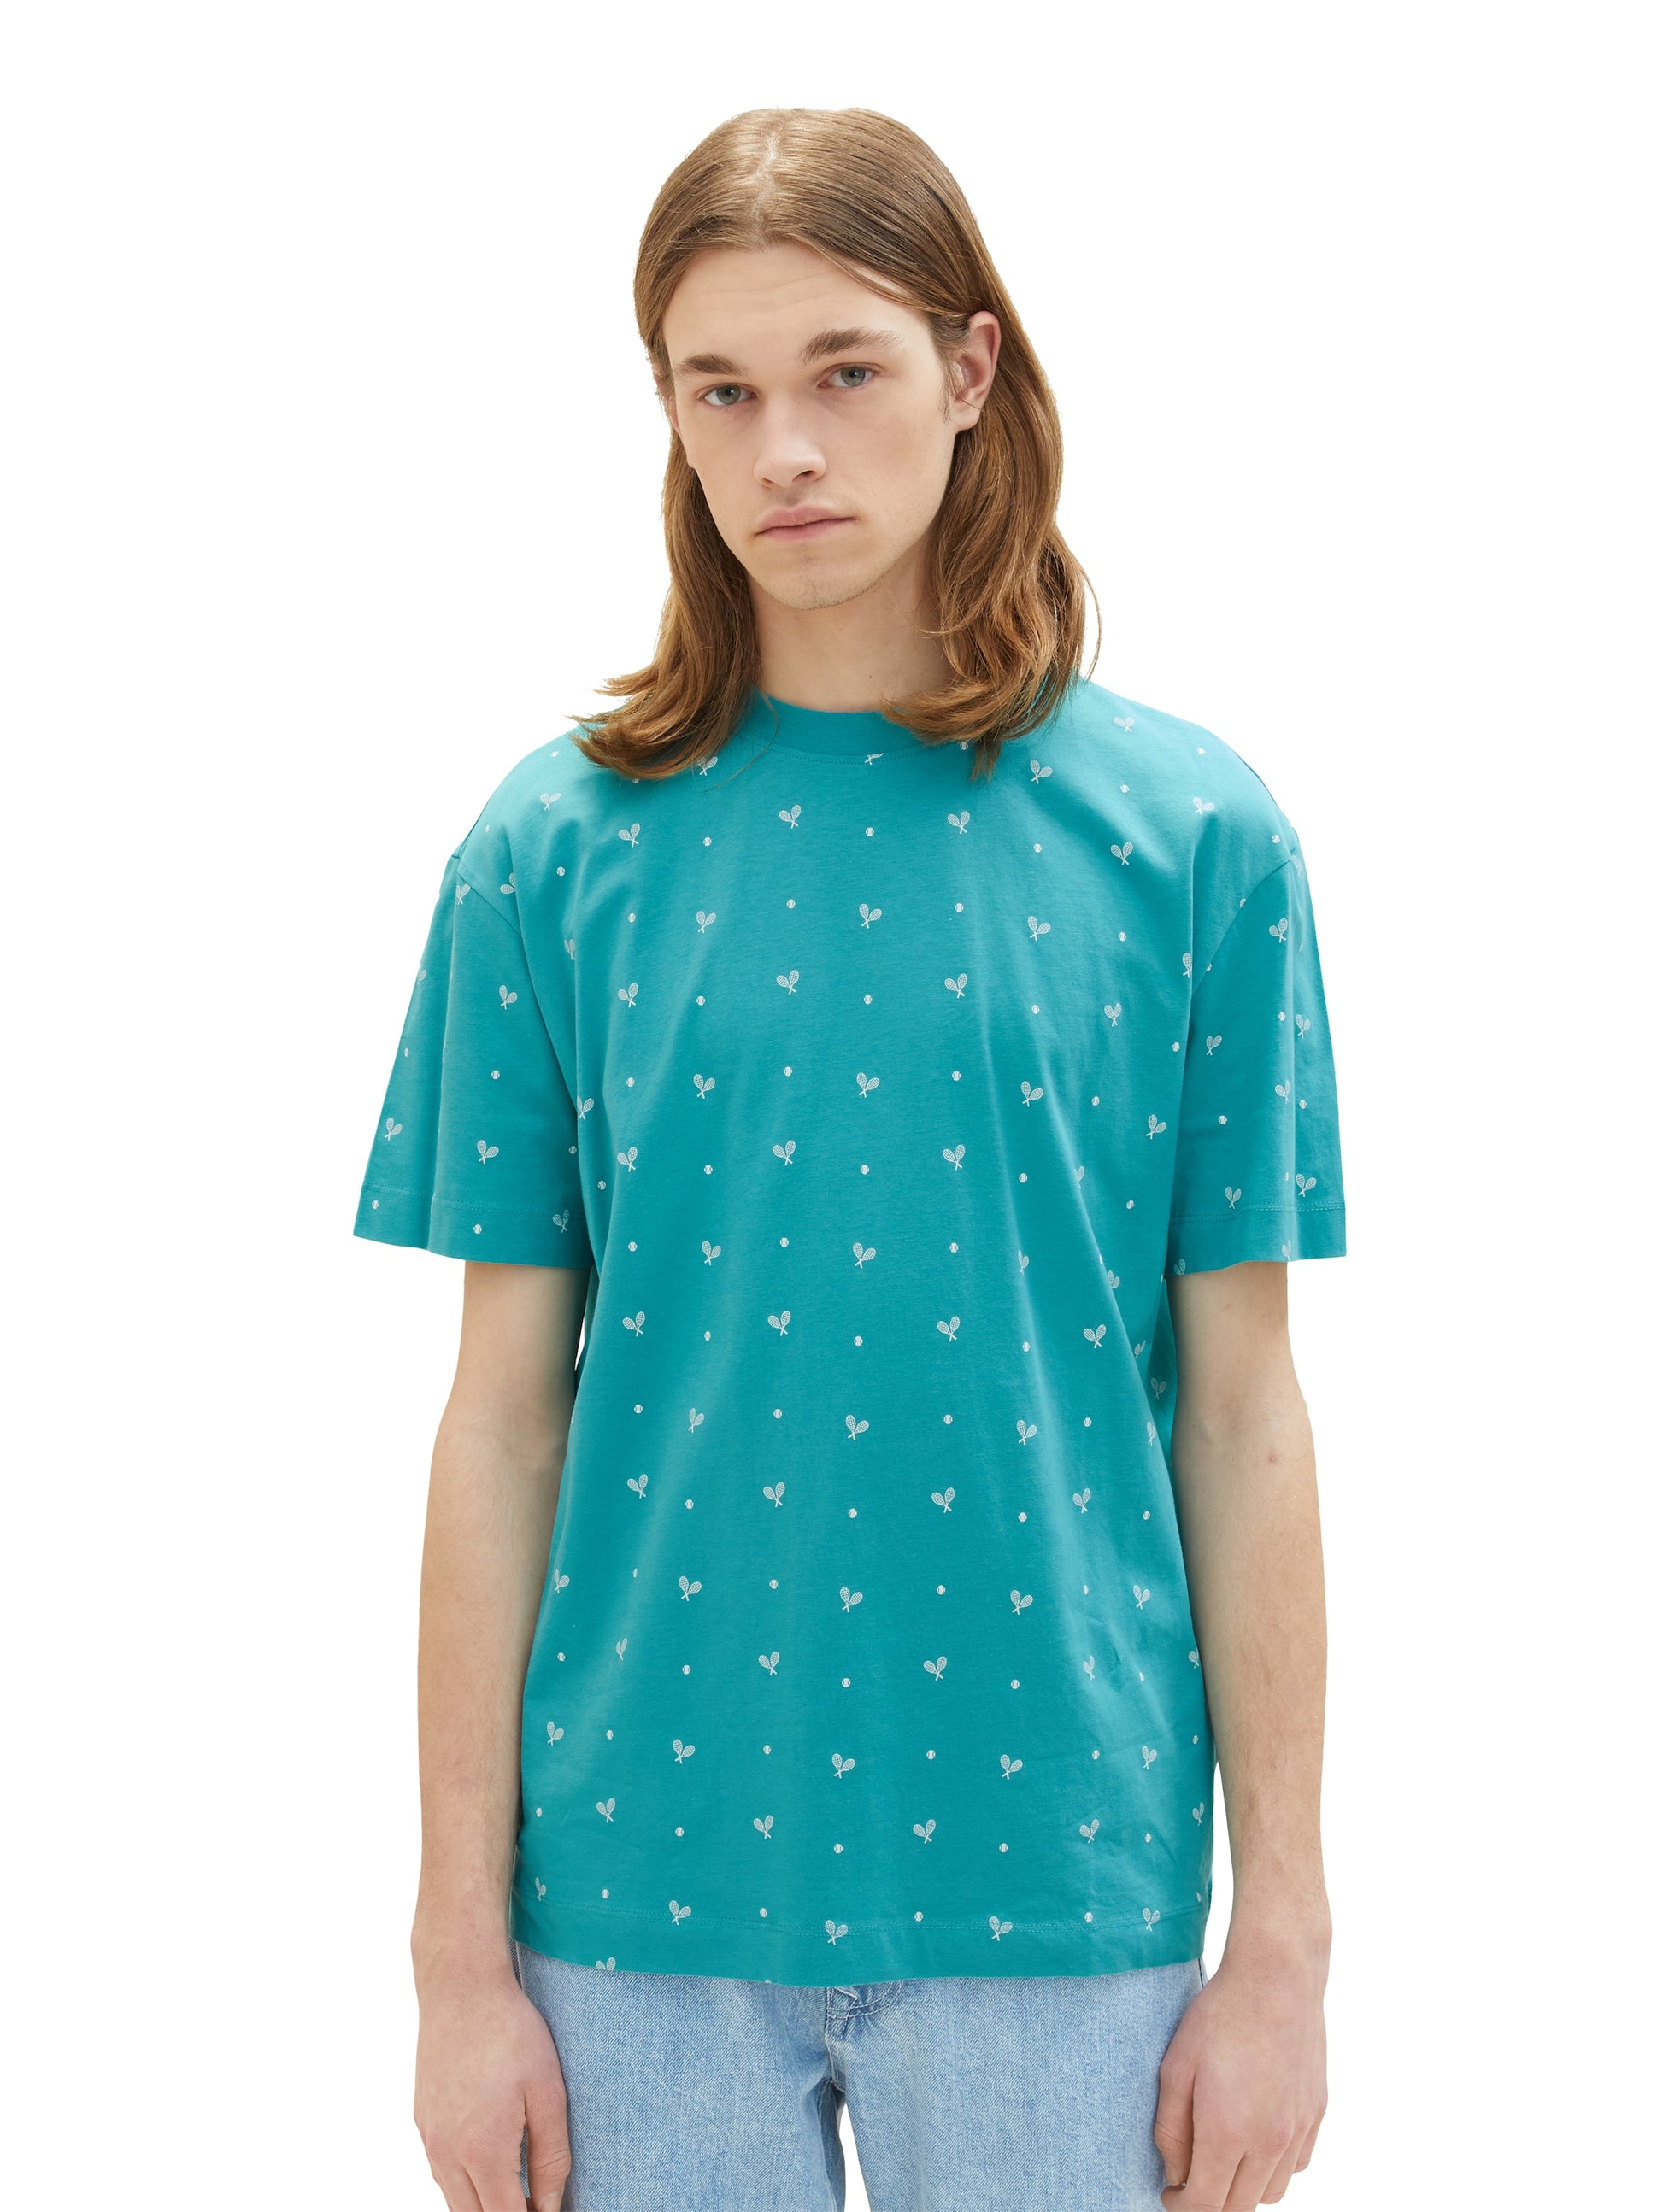 Blum-Jundt – AOP Modehaus relaxed t-shirt